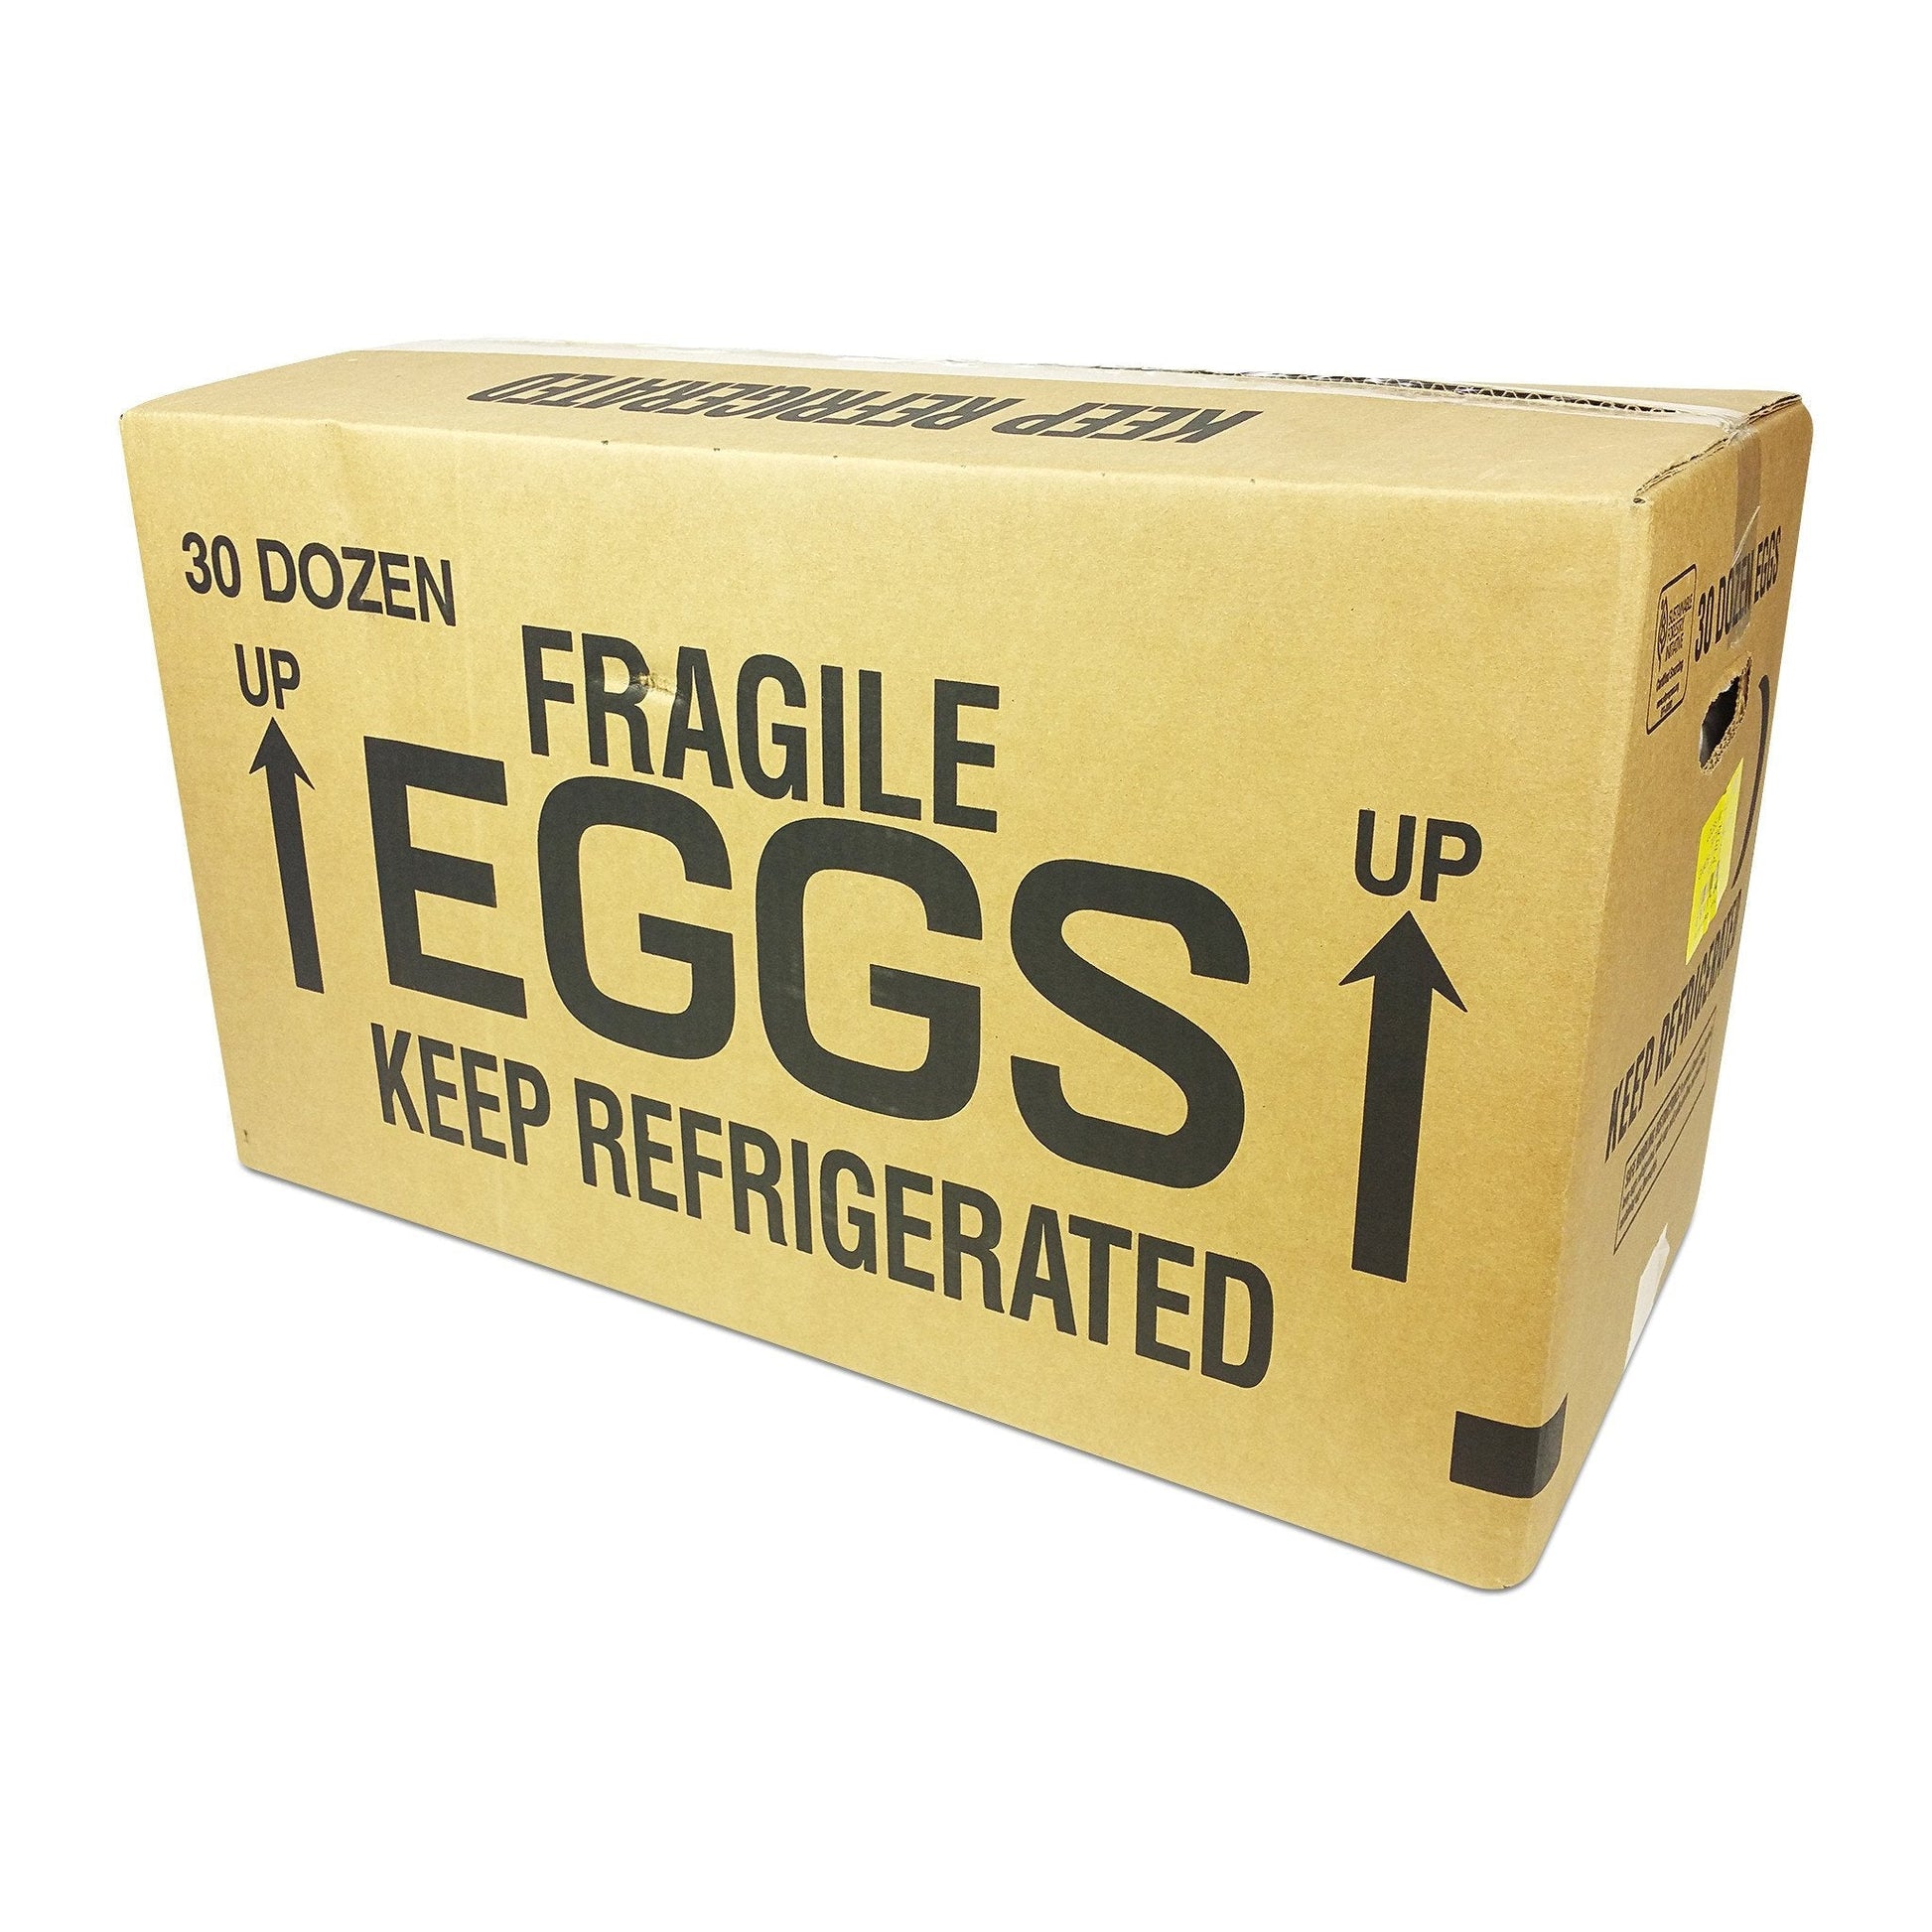 Blank Egg Cartons Bulk 5 Packs - Holds 12 Eggs 1 Dozen, Reusable Plastic  Egg Trays for